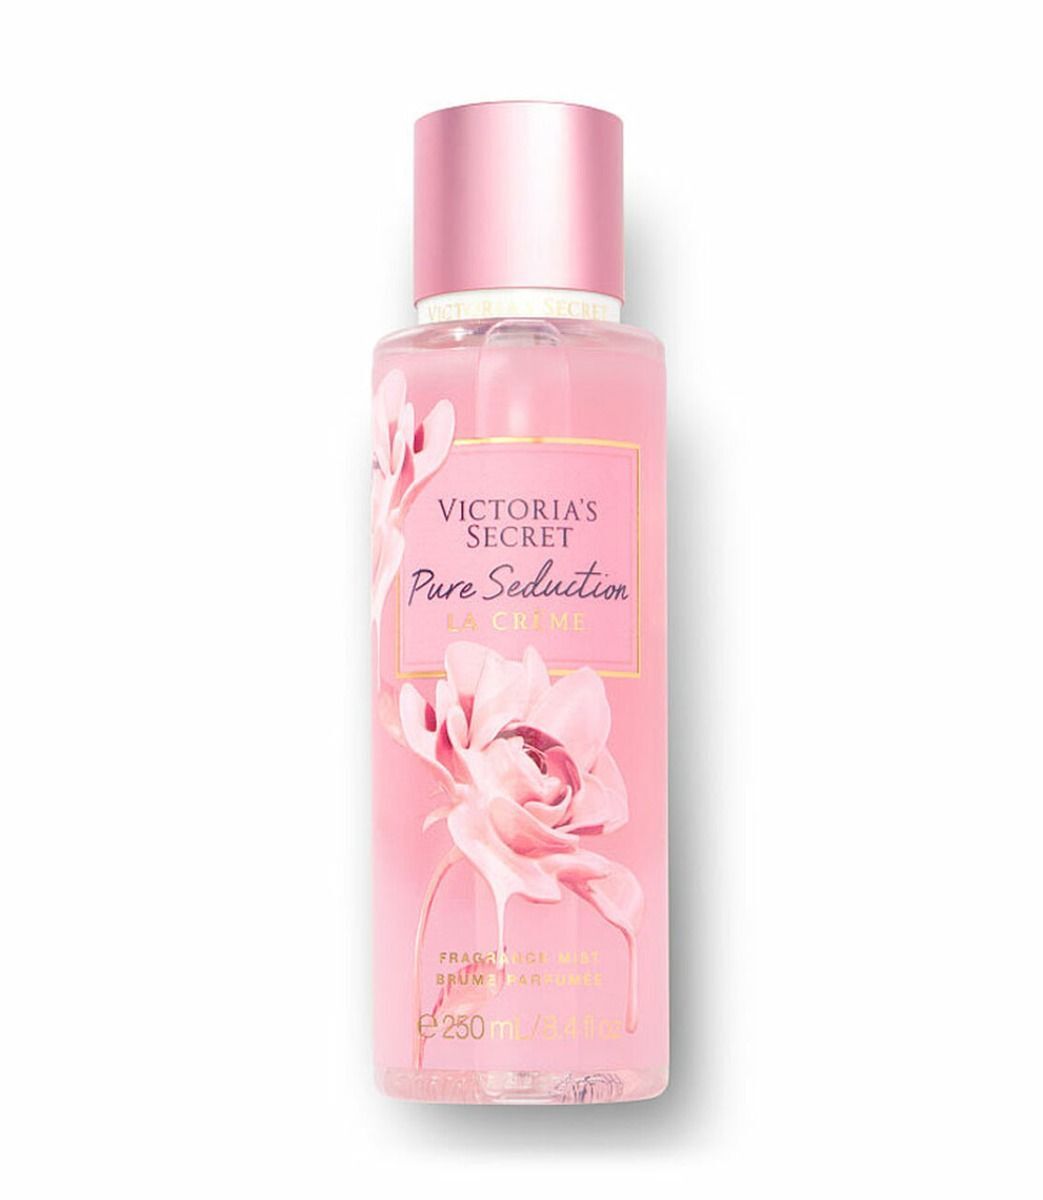 Victoria'S Secret Pure Seduction La Crème Fragrance Mist 250ml